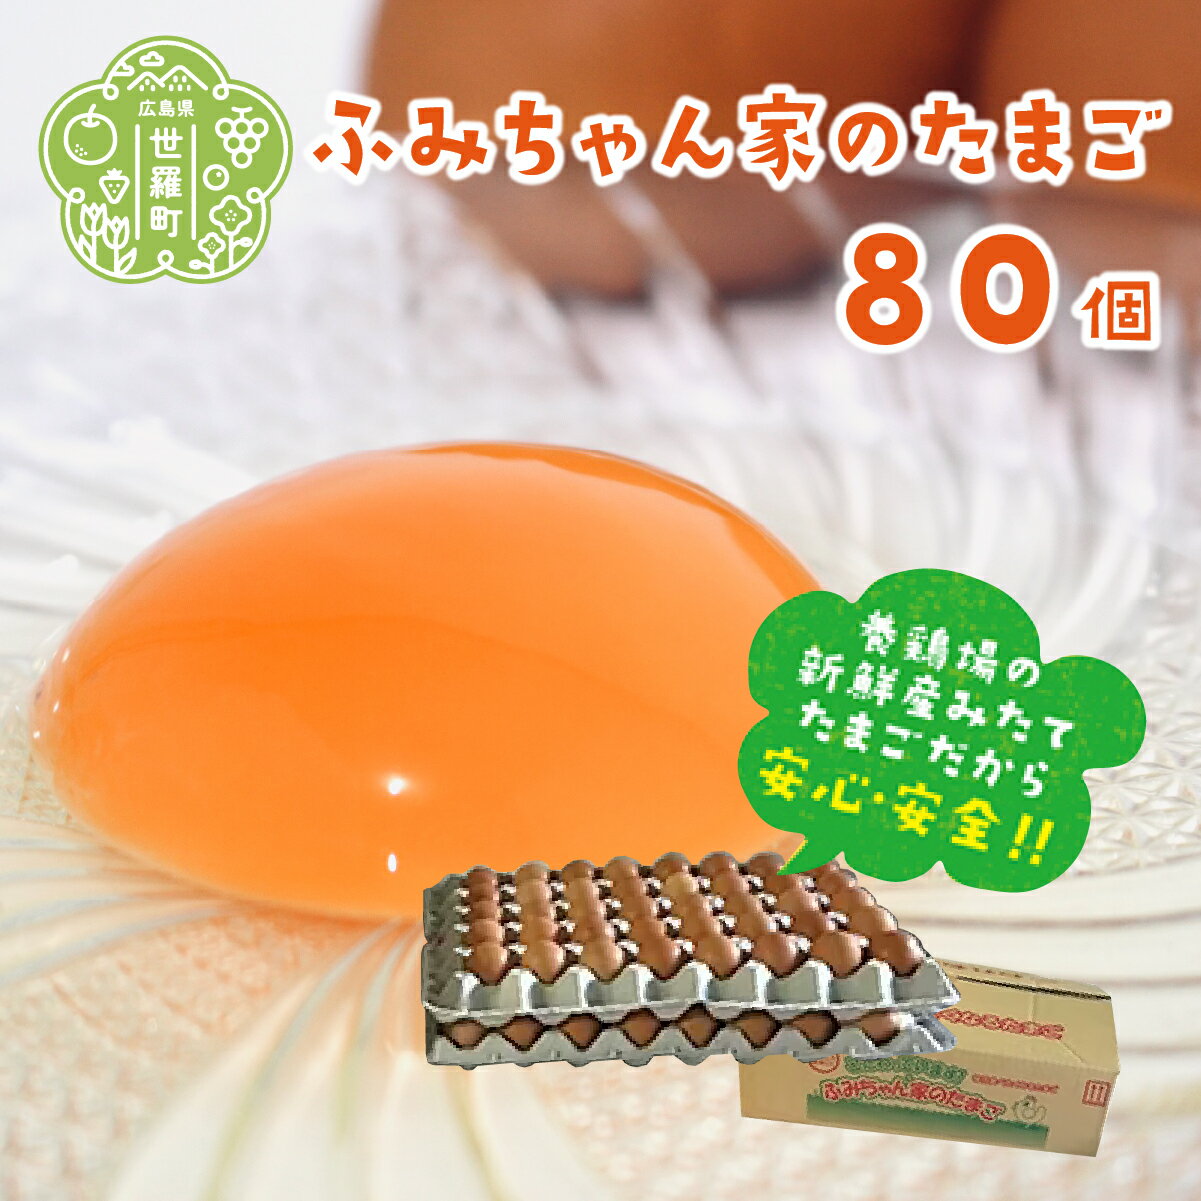 【ふるさと納税】ふみちゃん家のたまご 80個入 広島県 卵 